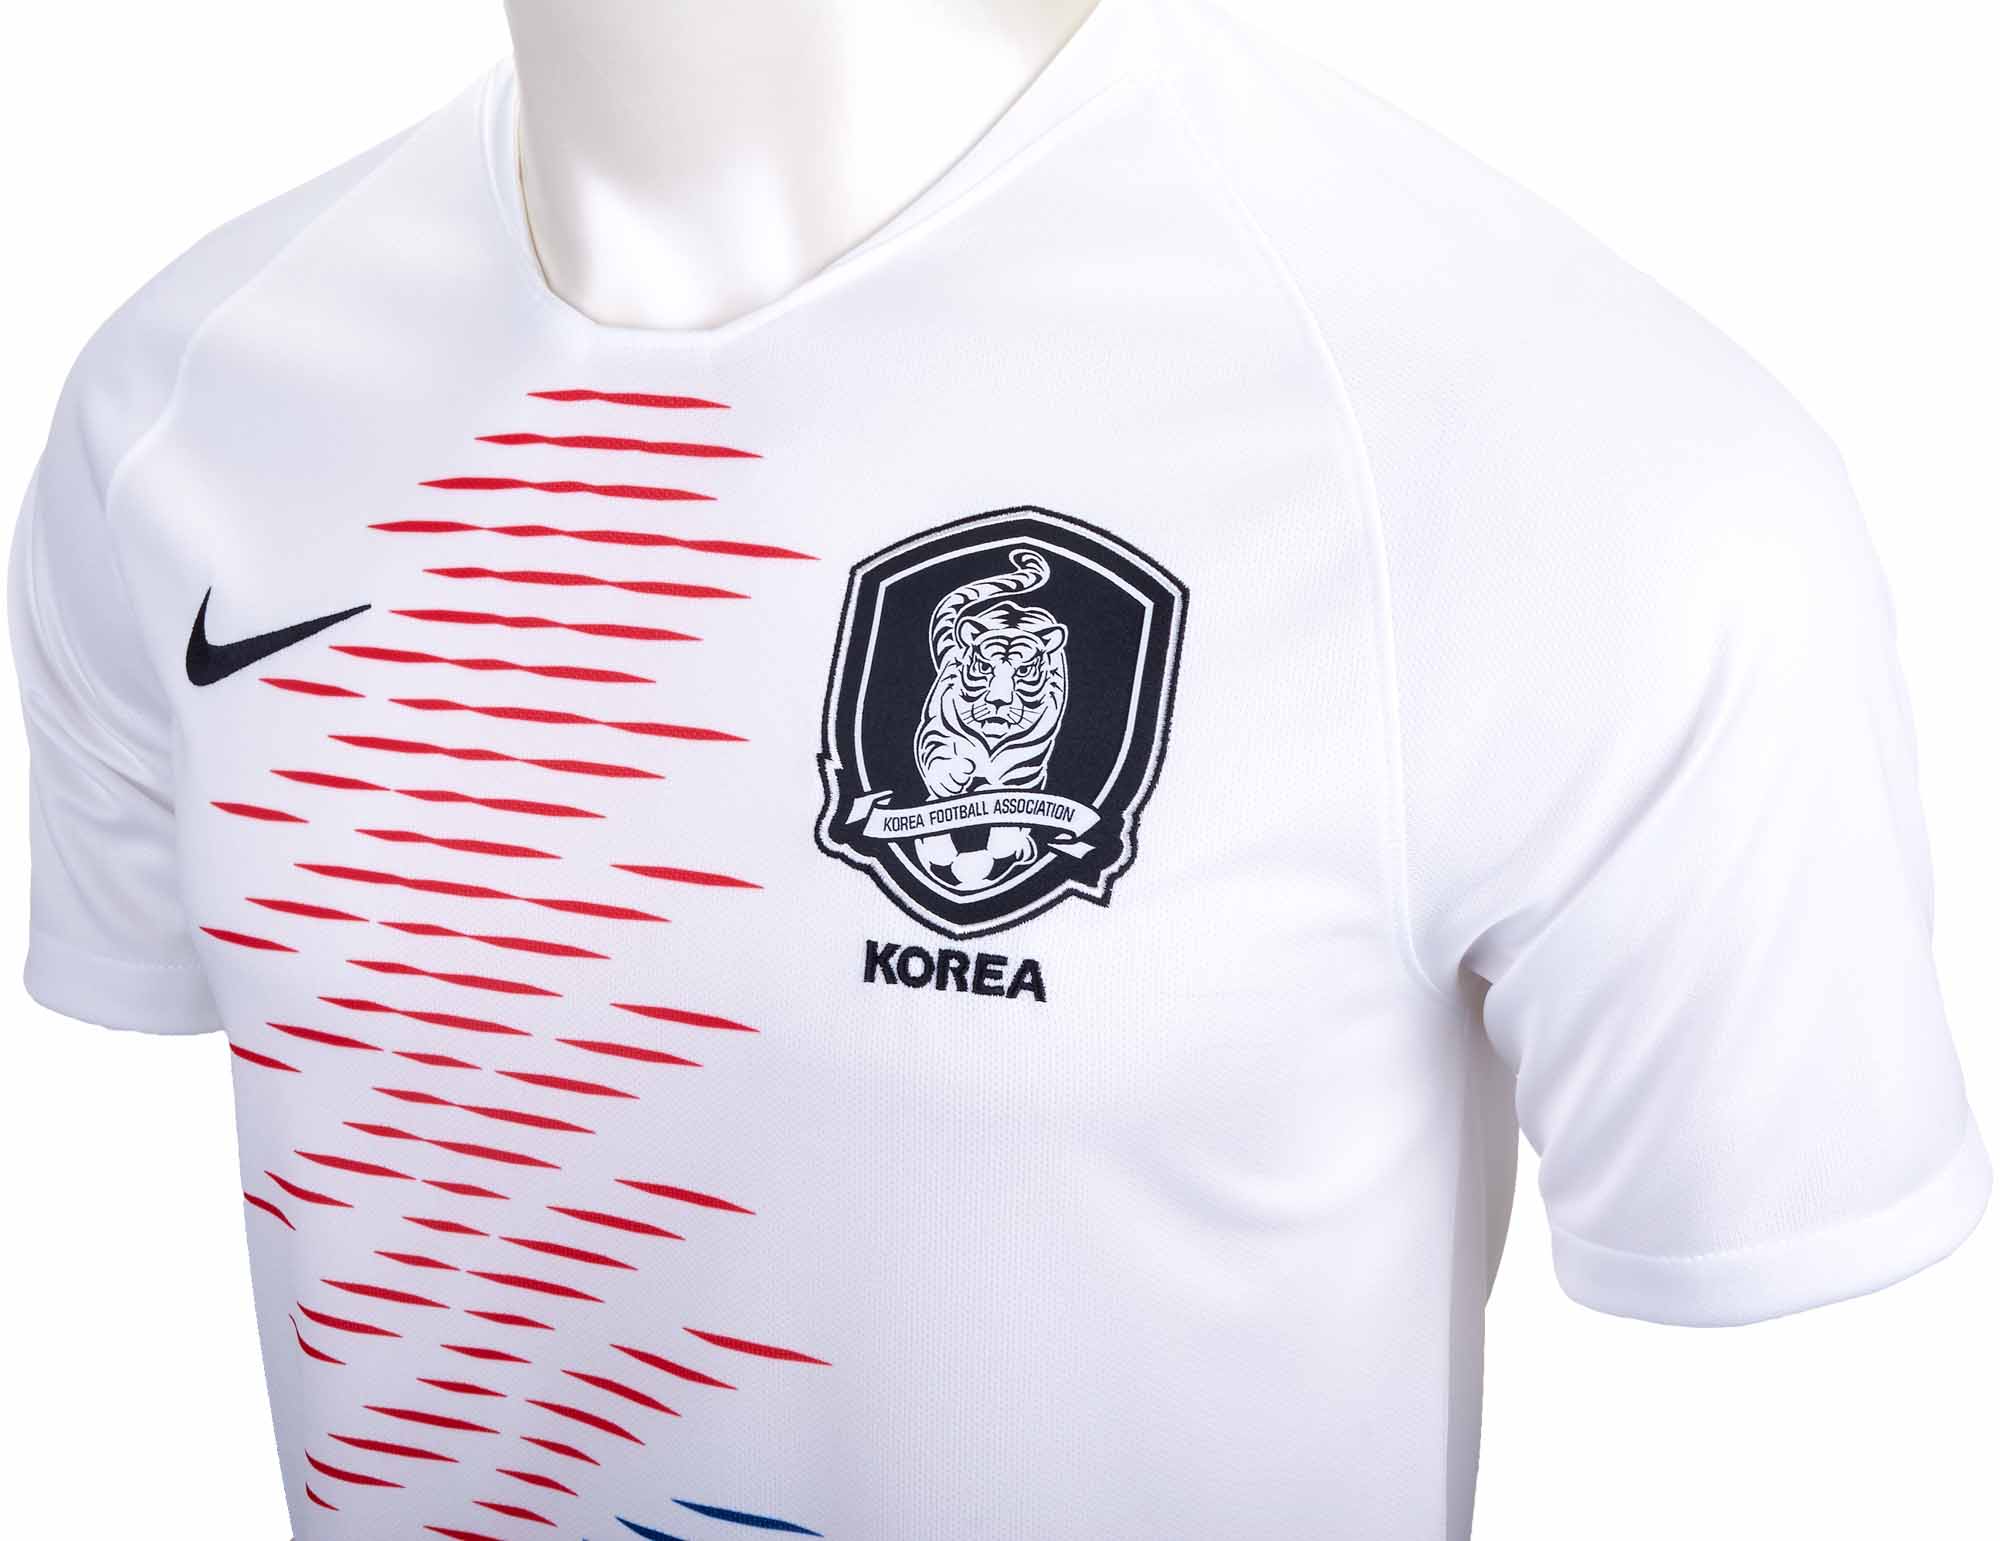 nike south korea jersey